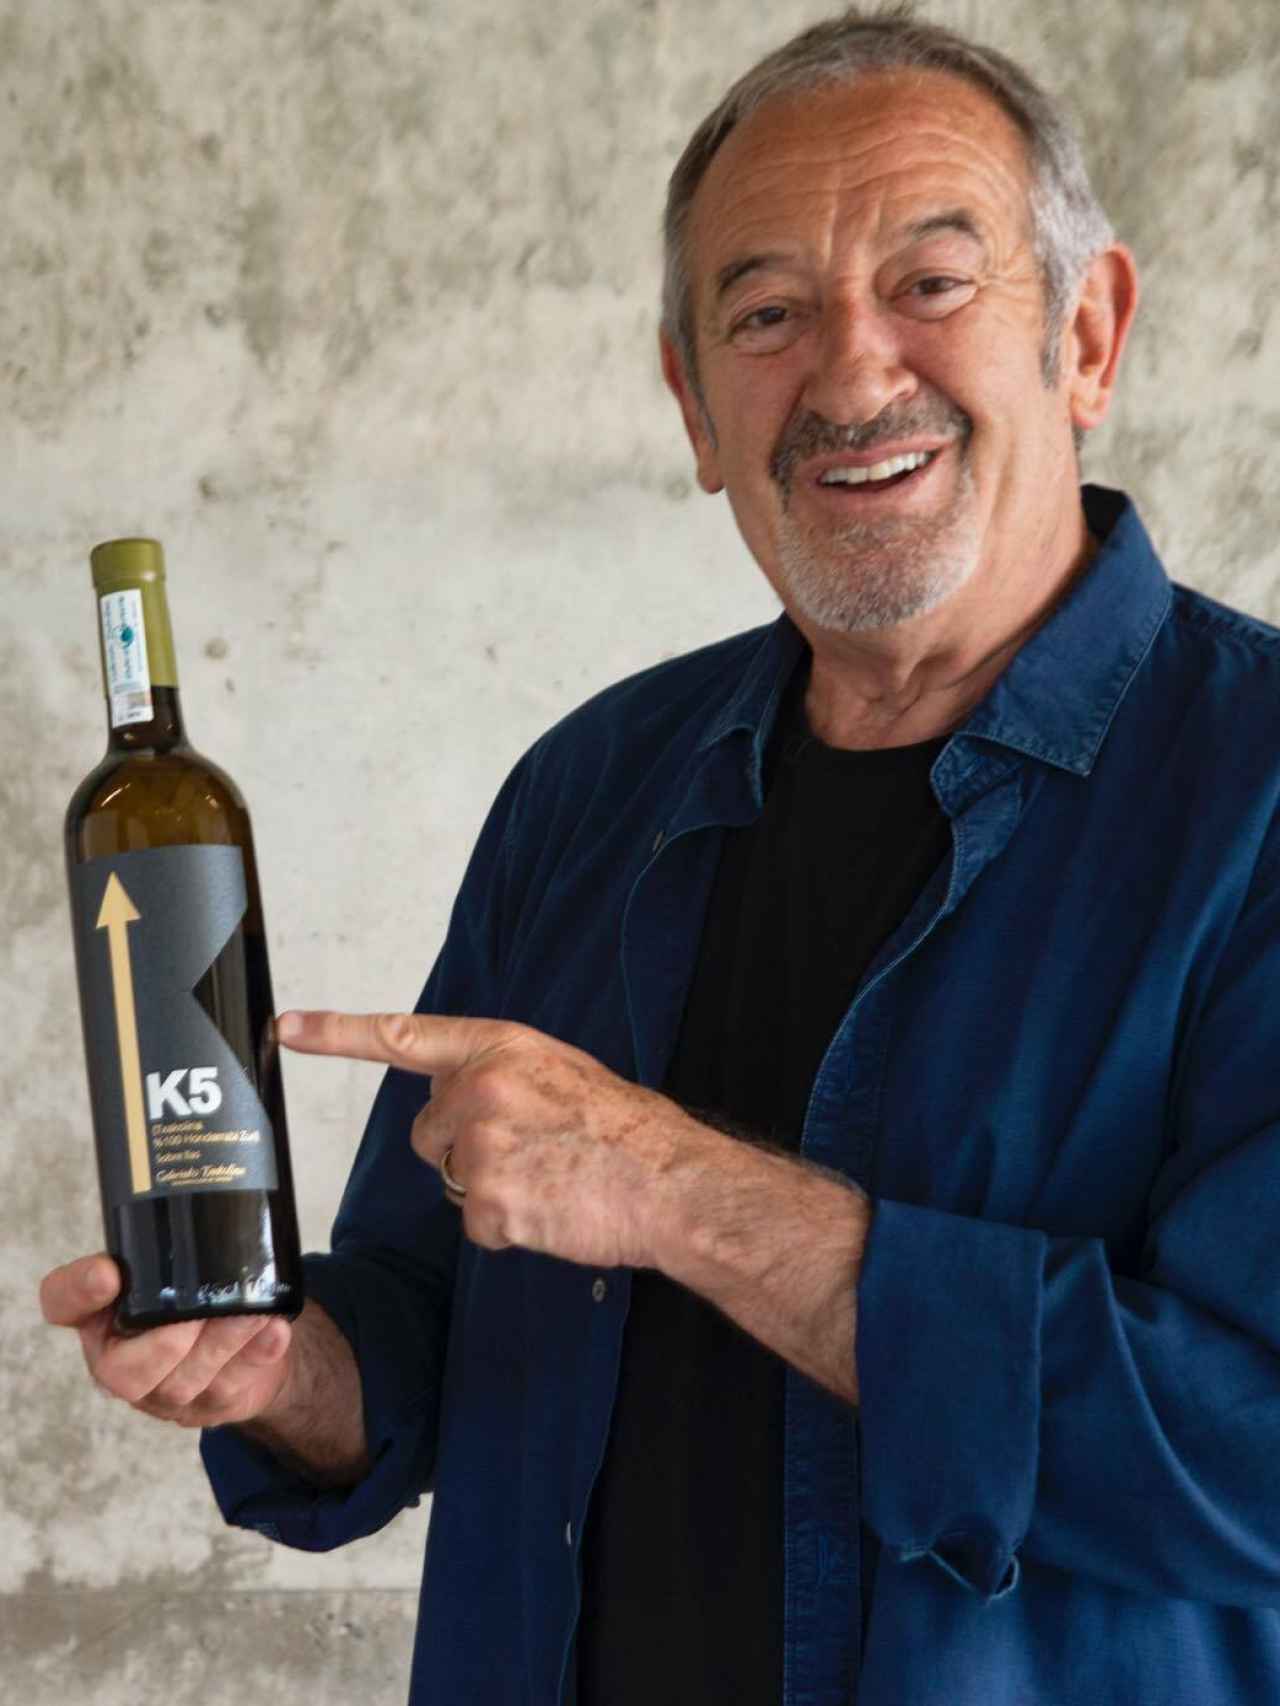 Karlos Arguiñano con uno de los vinos de su bodega, en una imagen compartida en redes sociales.